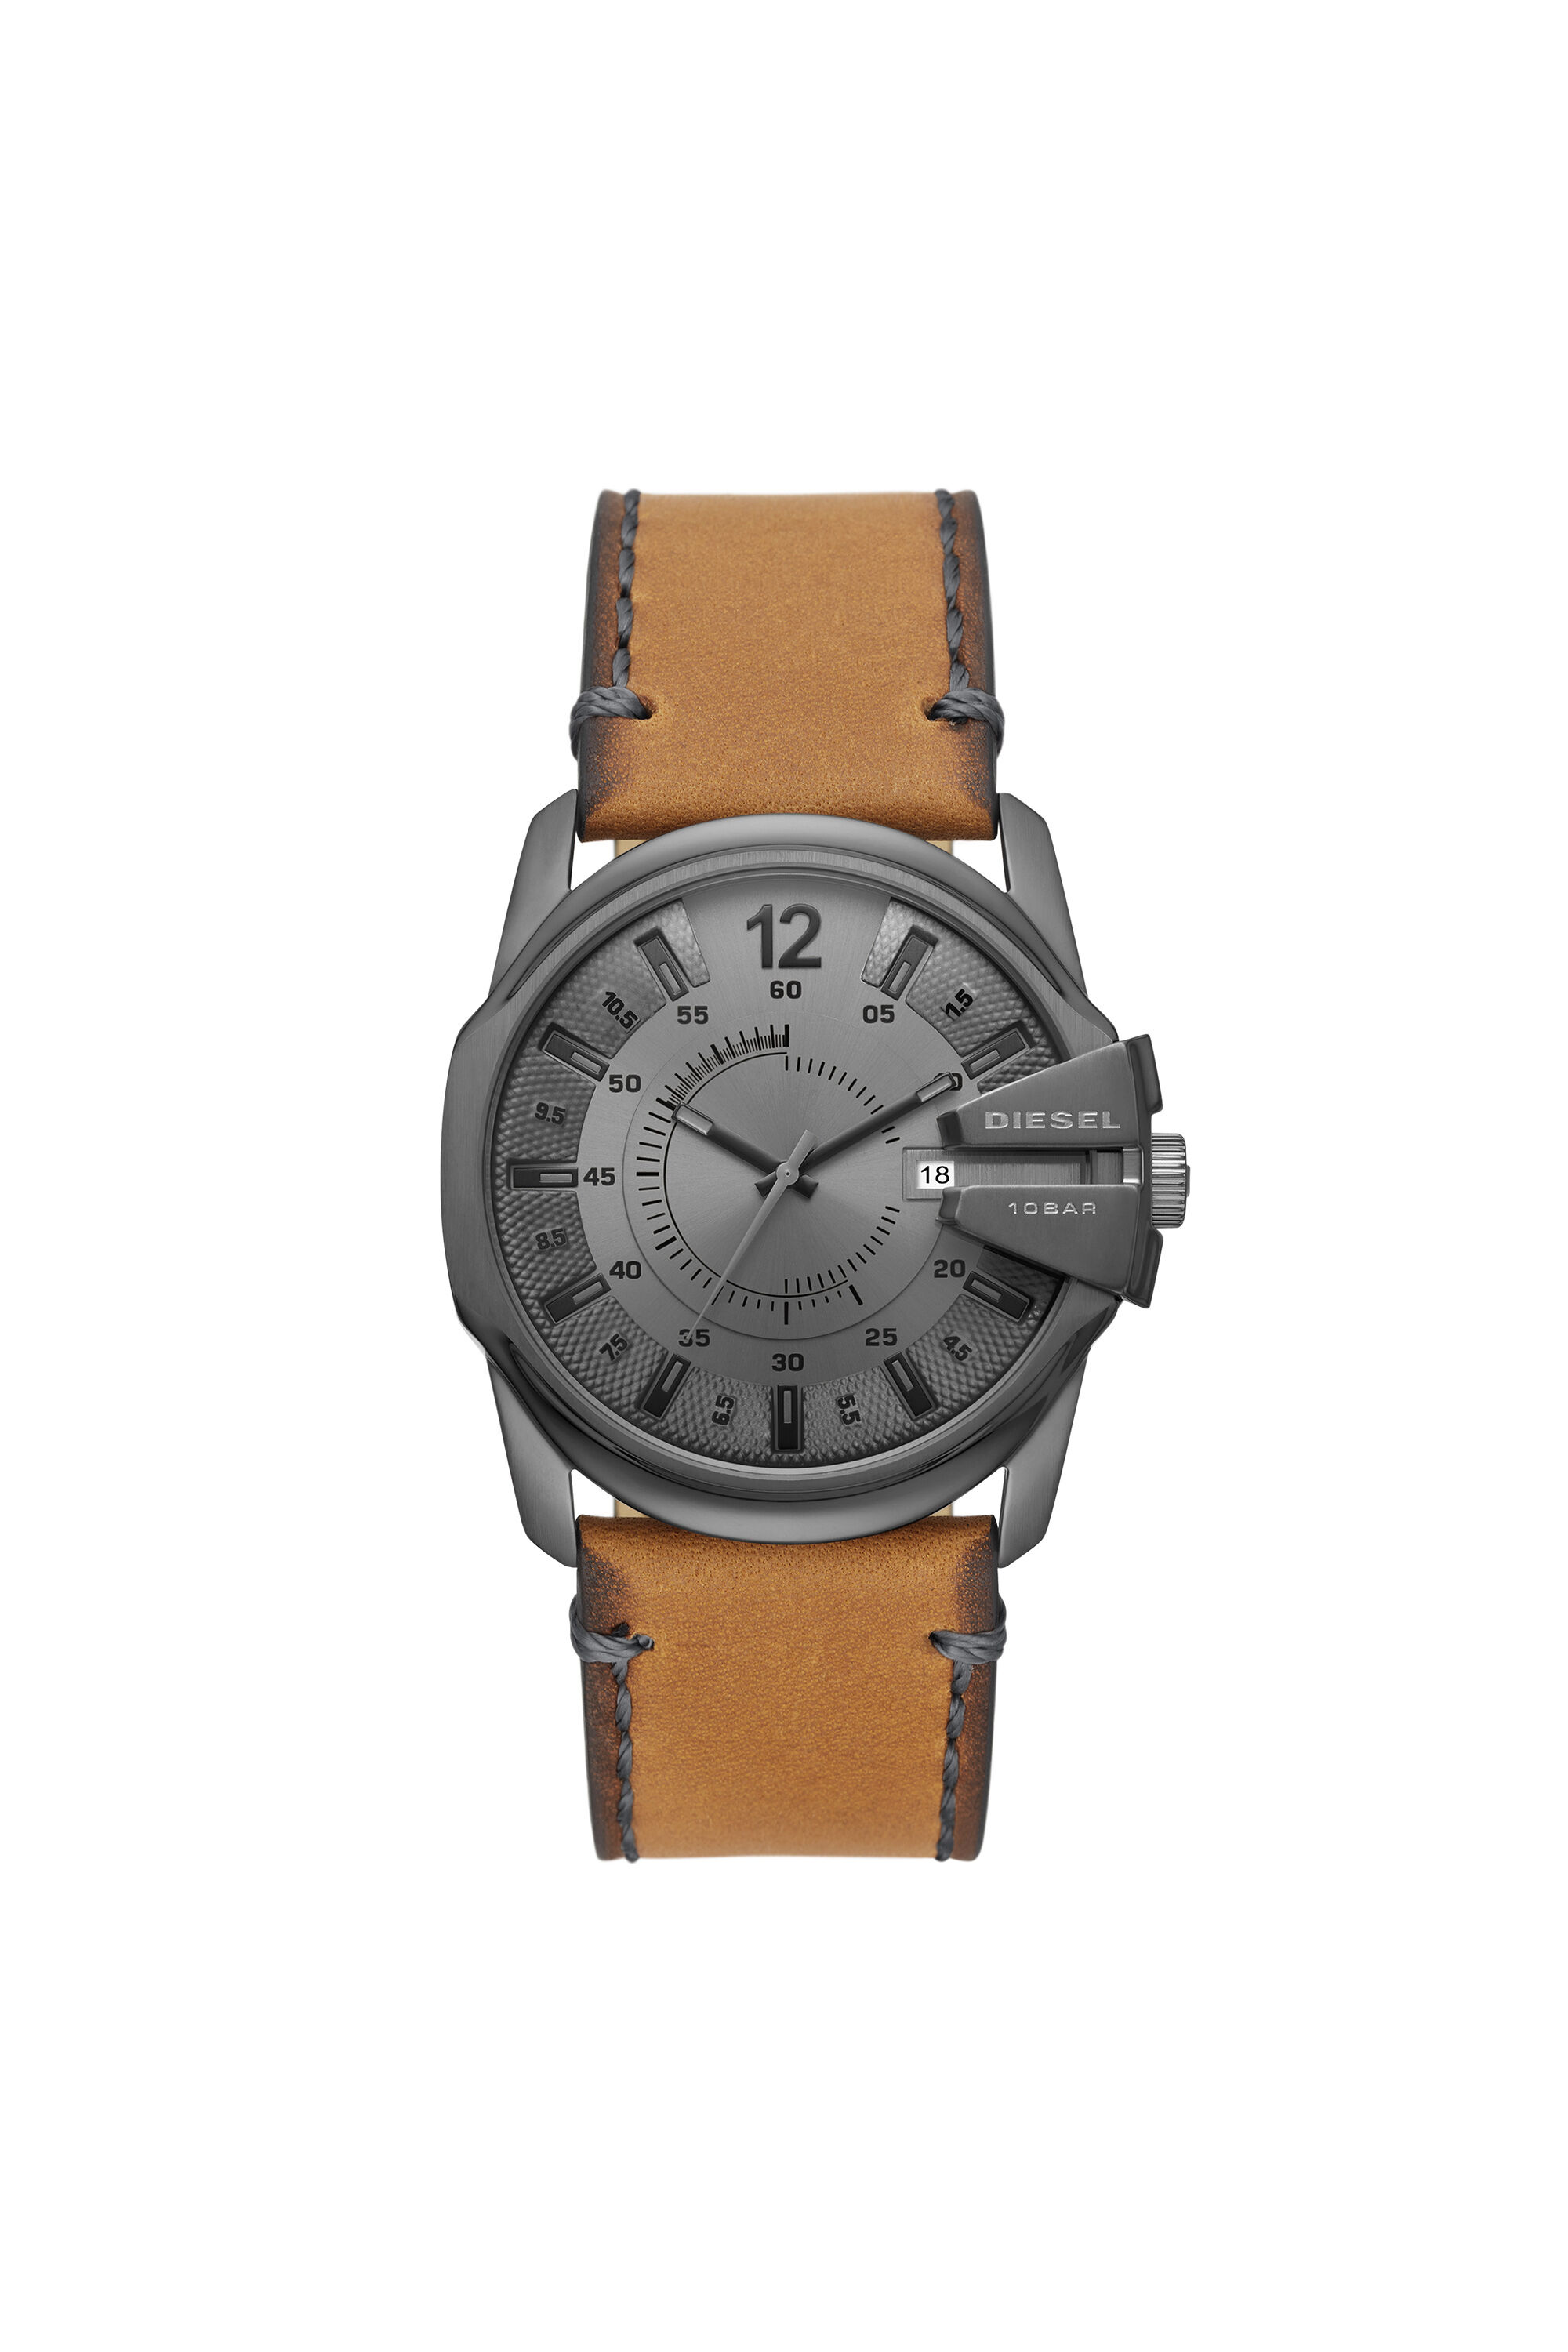 DZ1964 Man: Master Chief three-hand brown leather watch | Diesel